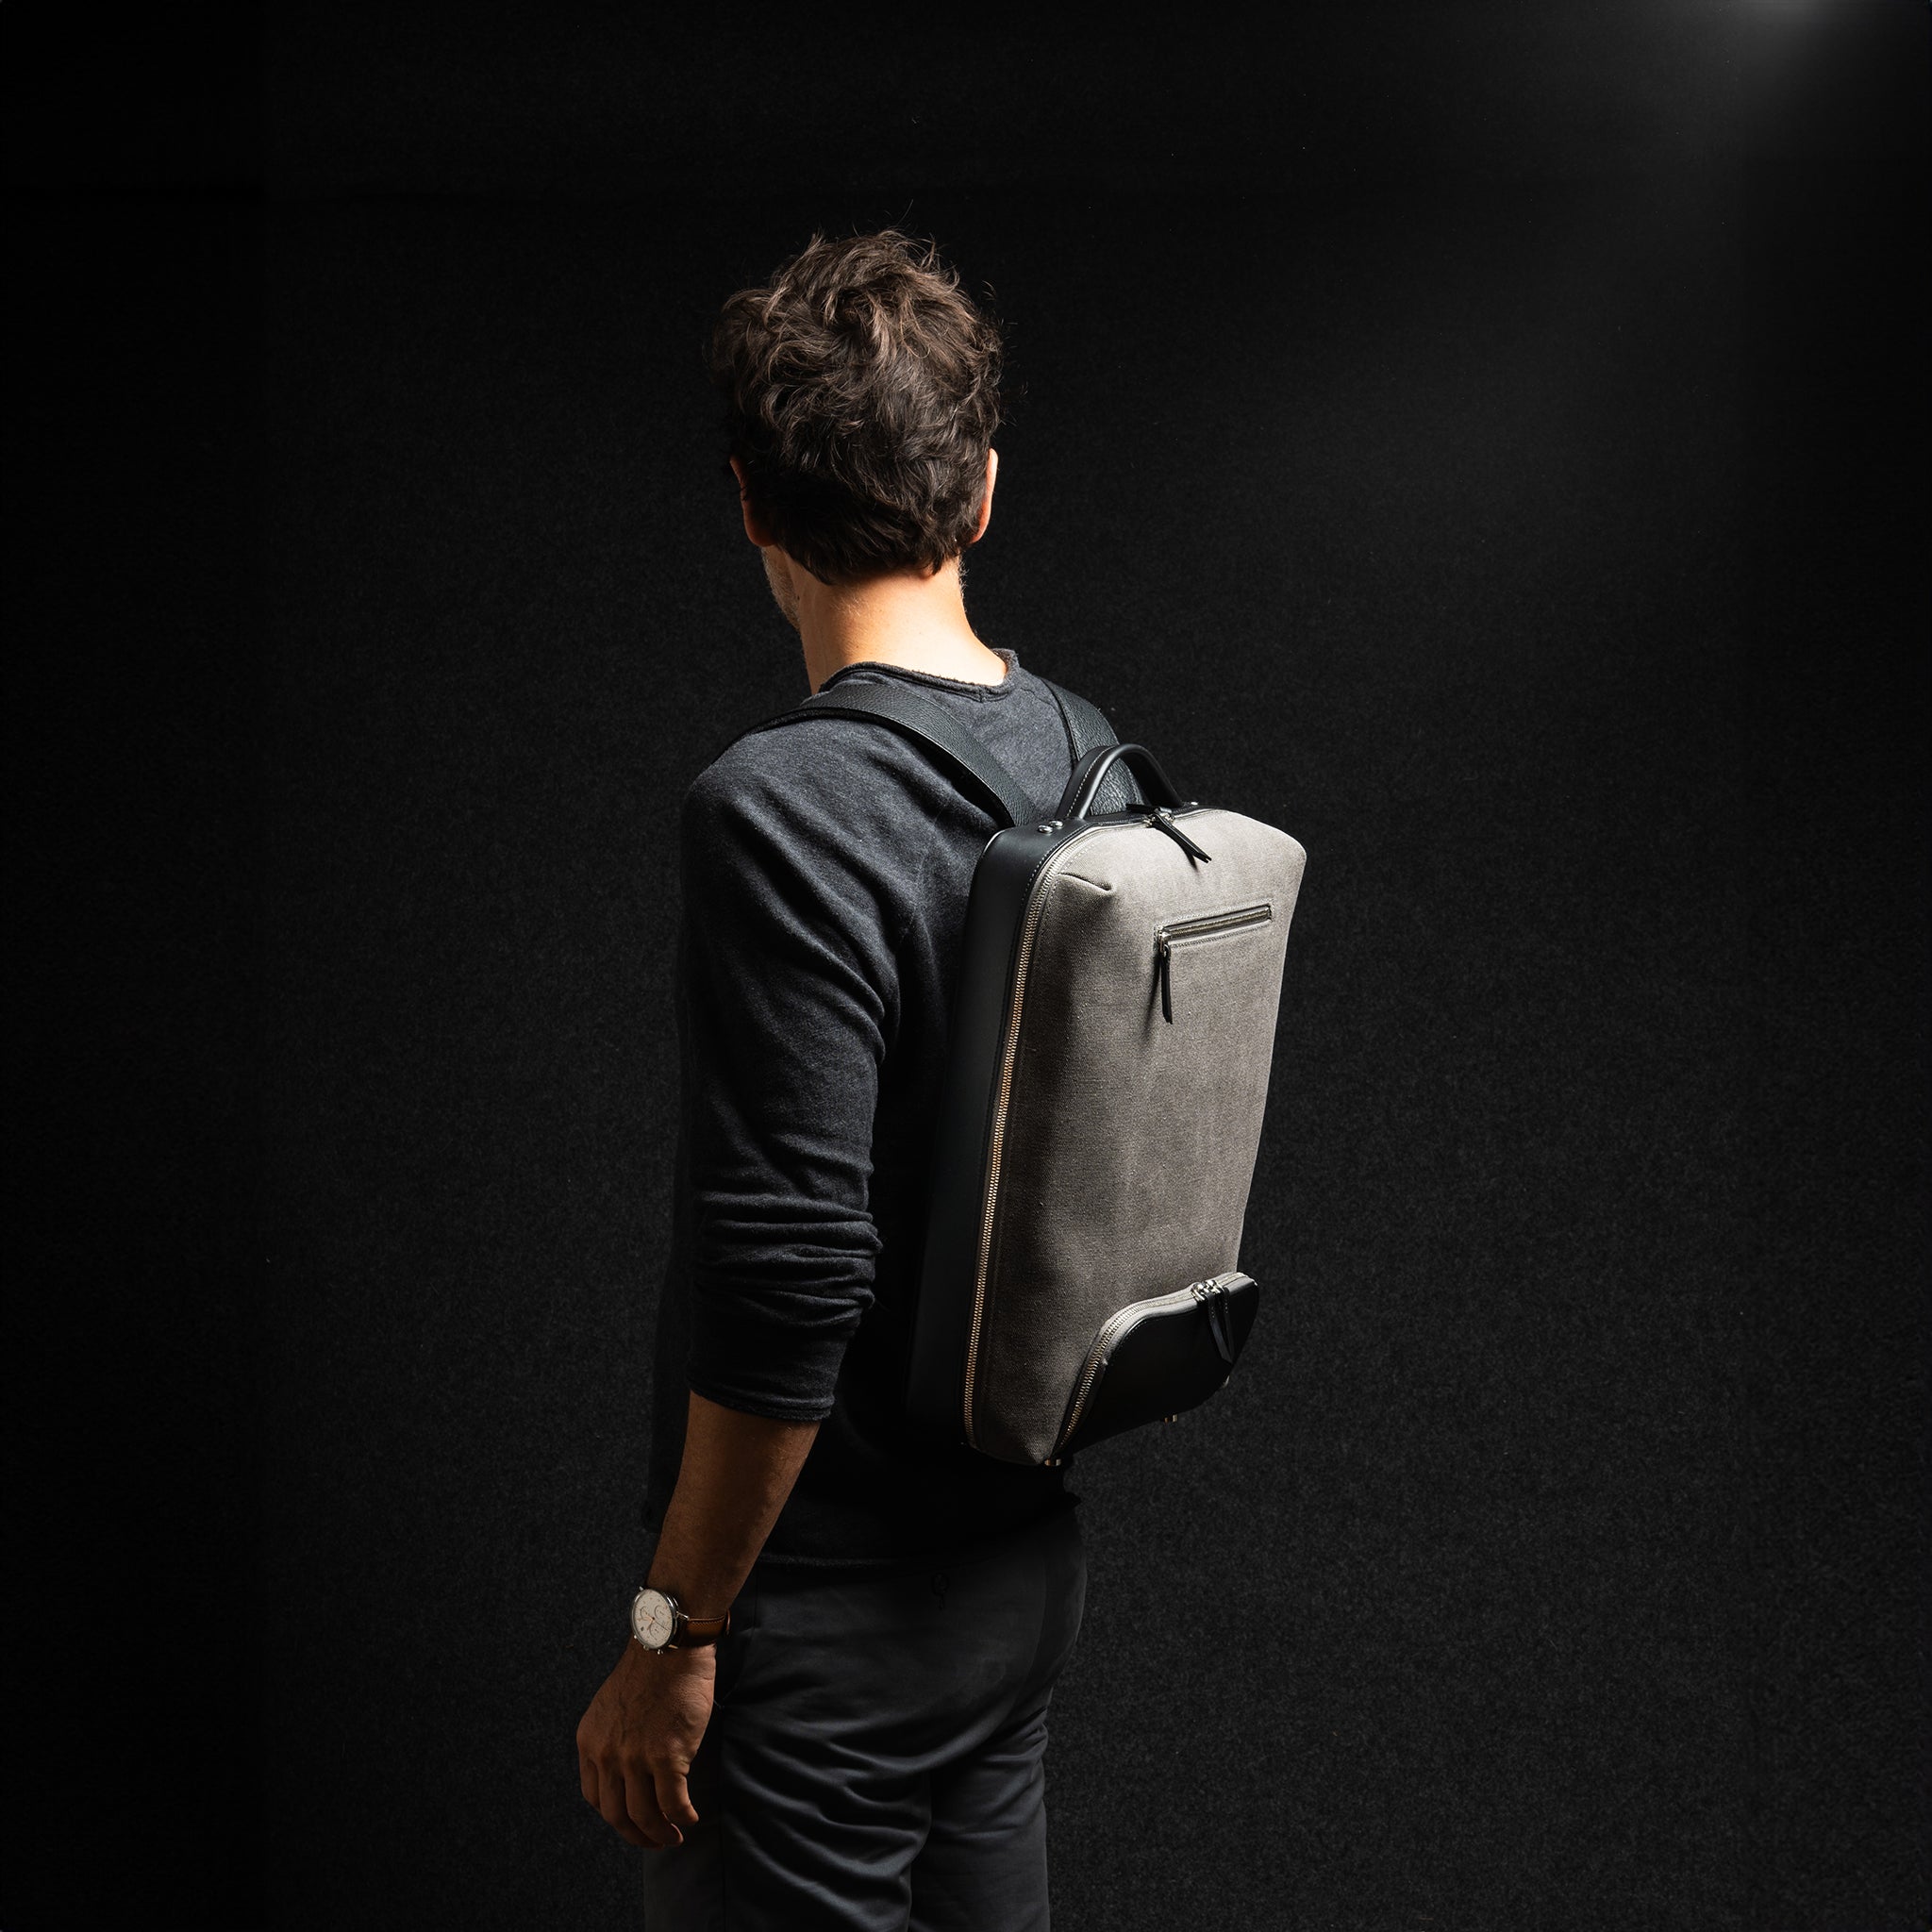 Conçu pour les hommes d'affaires, ce sac à dos en toile et cuir offre un espace sécurisé pour votre ordinateur portable. Ses multiples compartiments permettent une organisation facile de tous vos accessoires de bureau, tout en maintenant un look professionnel.